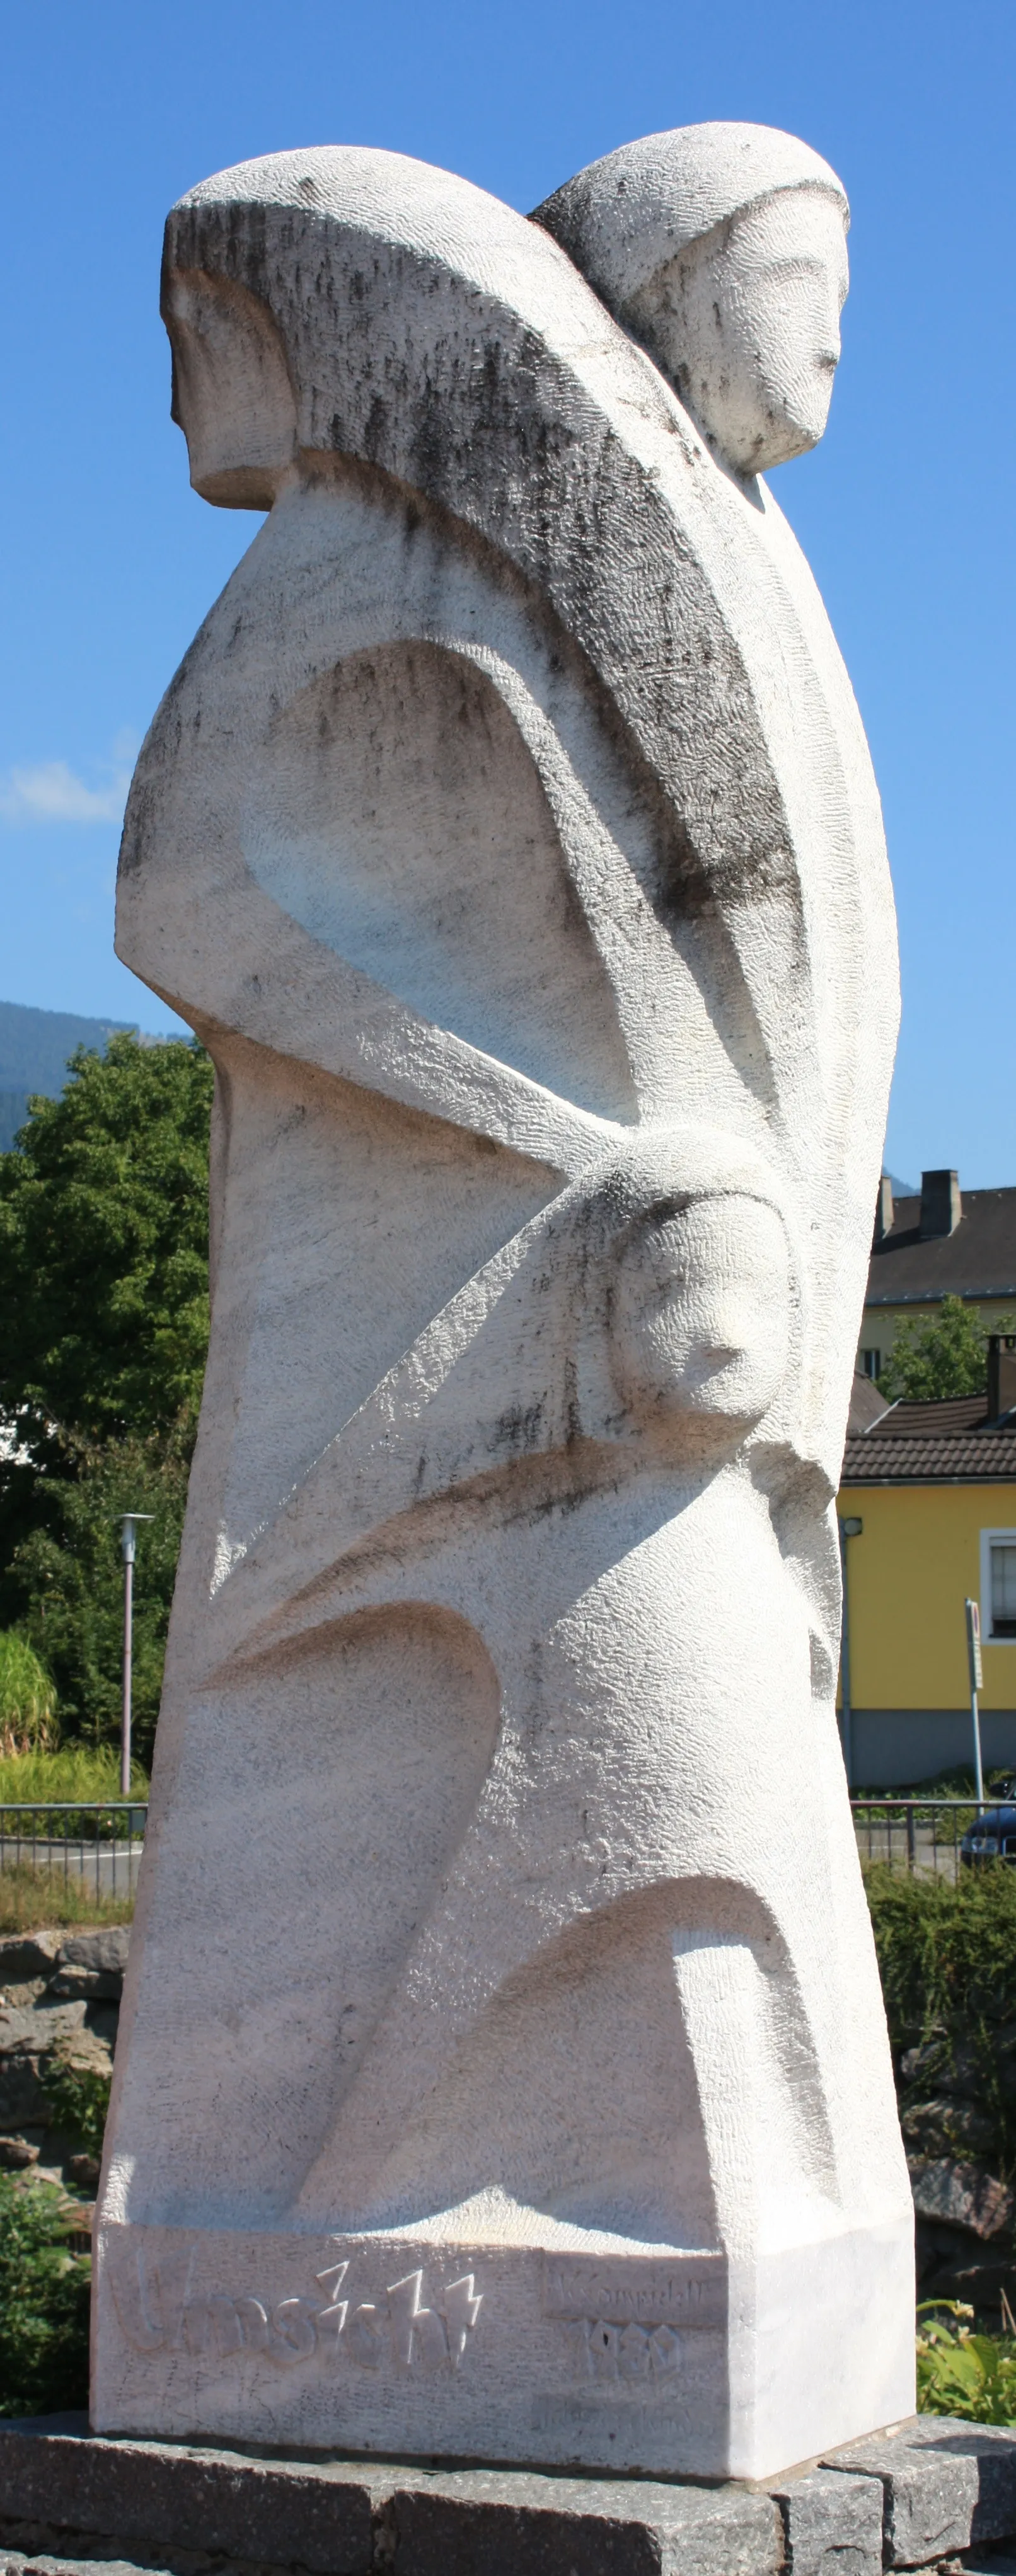 Photo showing: Sculpture - Umsicht - Artist Künstler: Konrad Campidell, 1980
Locality: Feistritz an der Drau

Community:Paternion